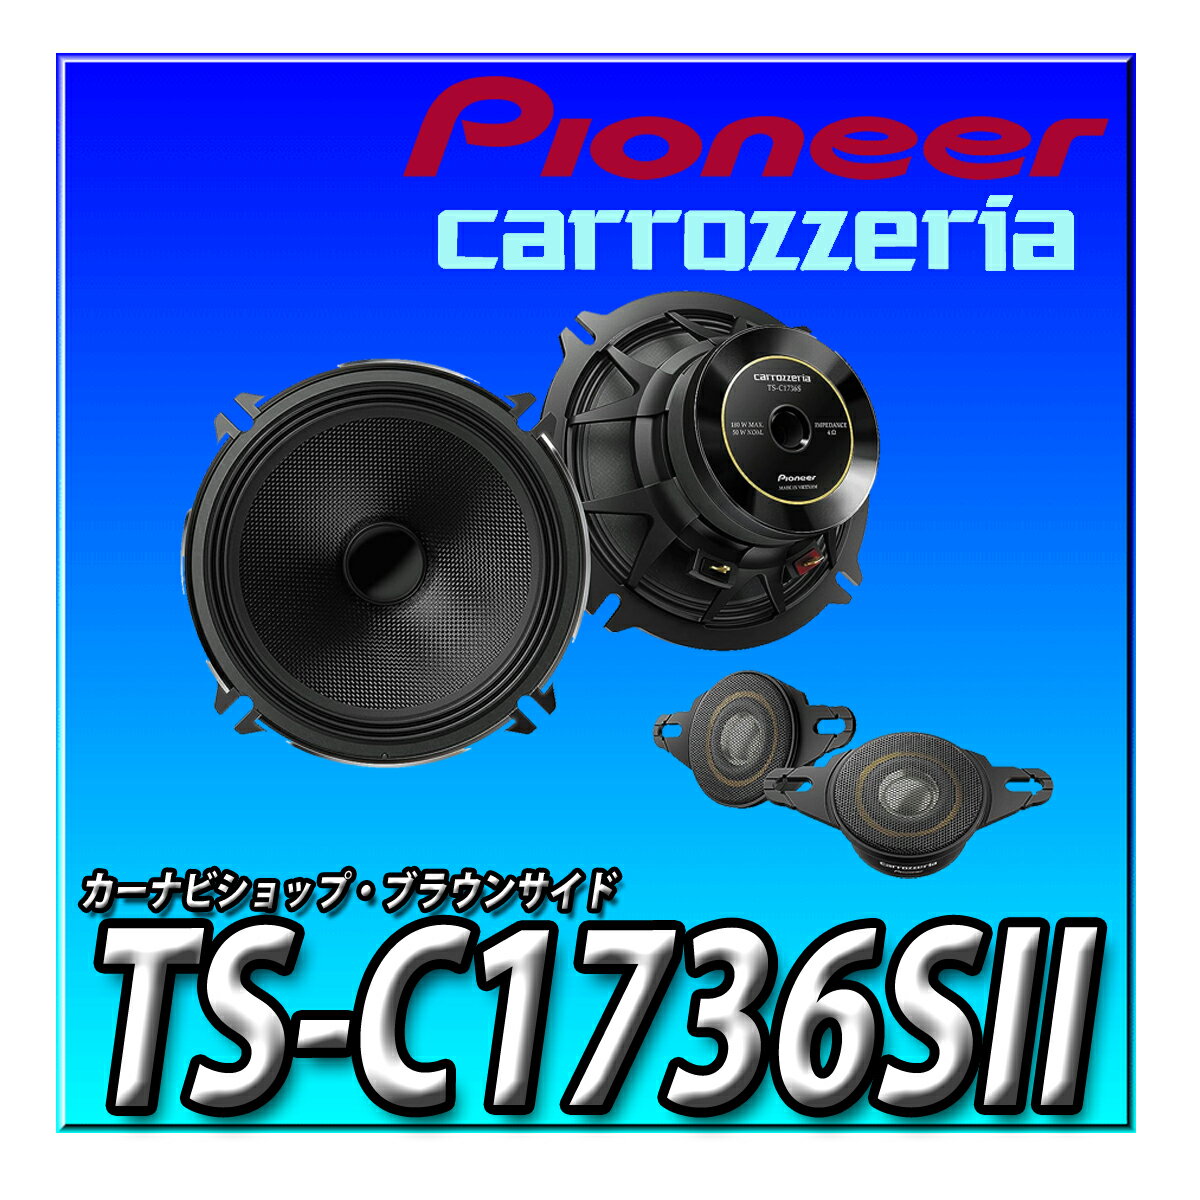 TS-C1736SII Pioneer パイオニア スピーカー 17cm カスタムフィットスピーカー セパレート2ウェイ ハイレゾ対応 カロッツェリア